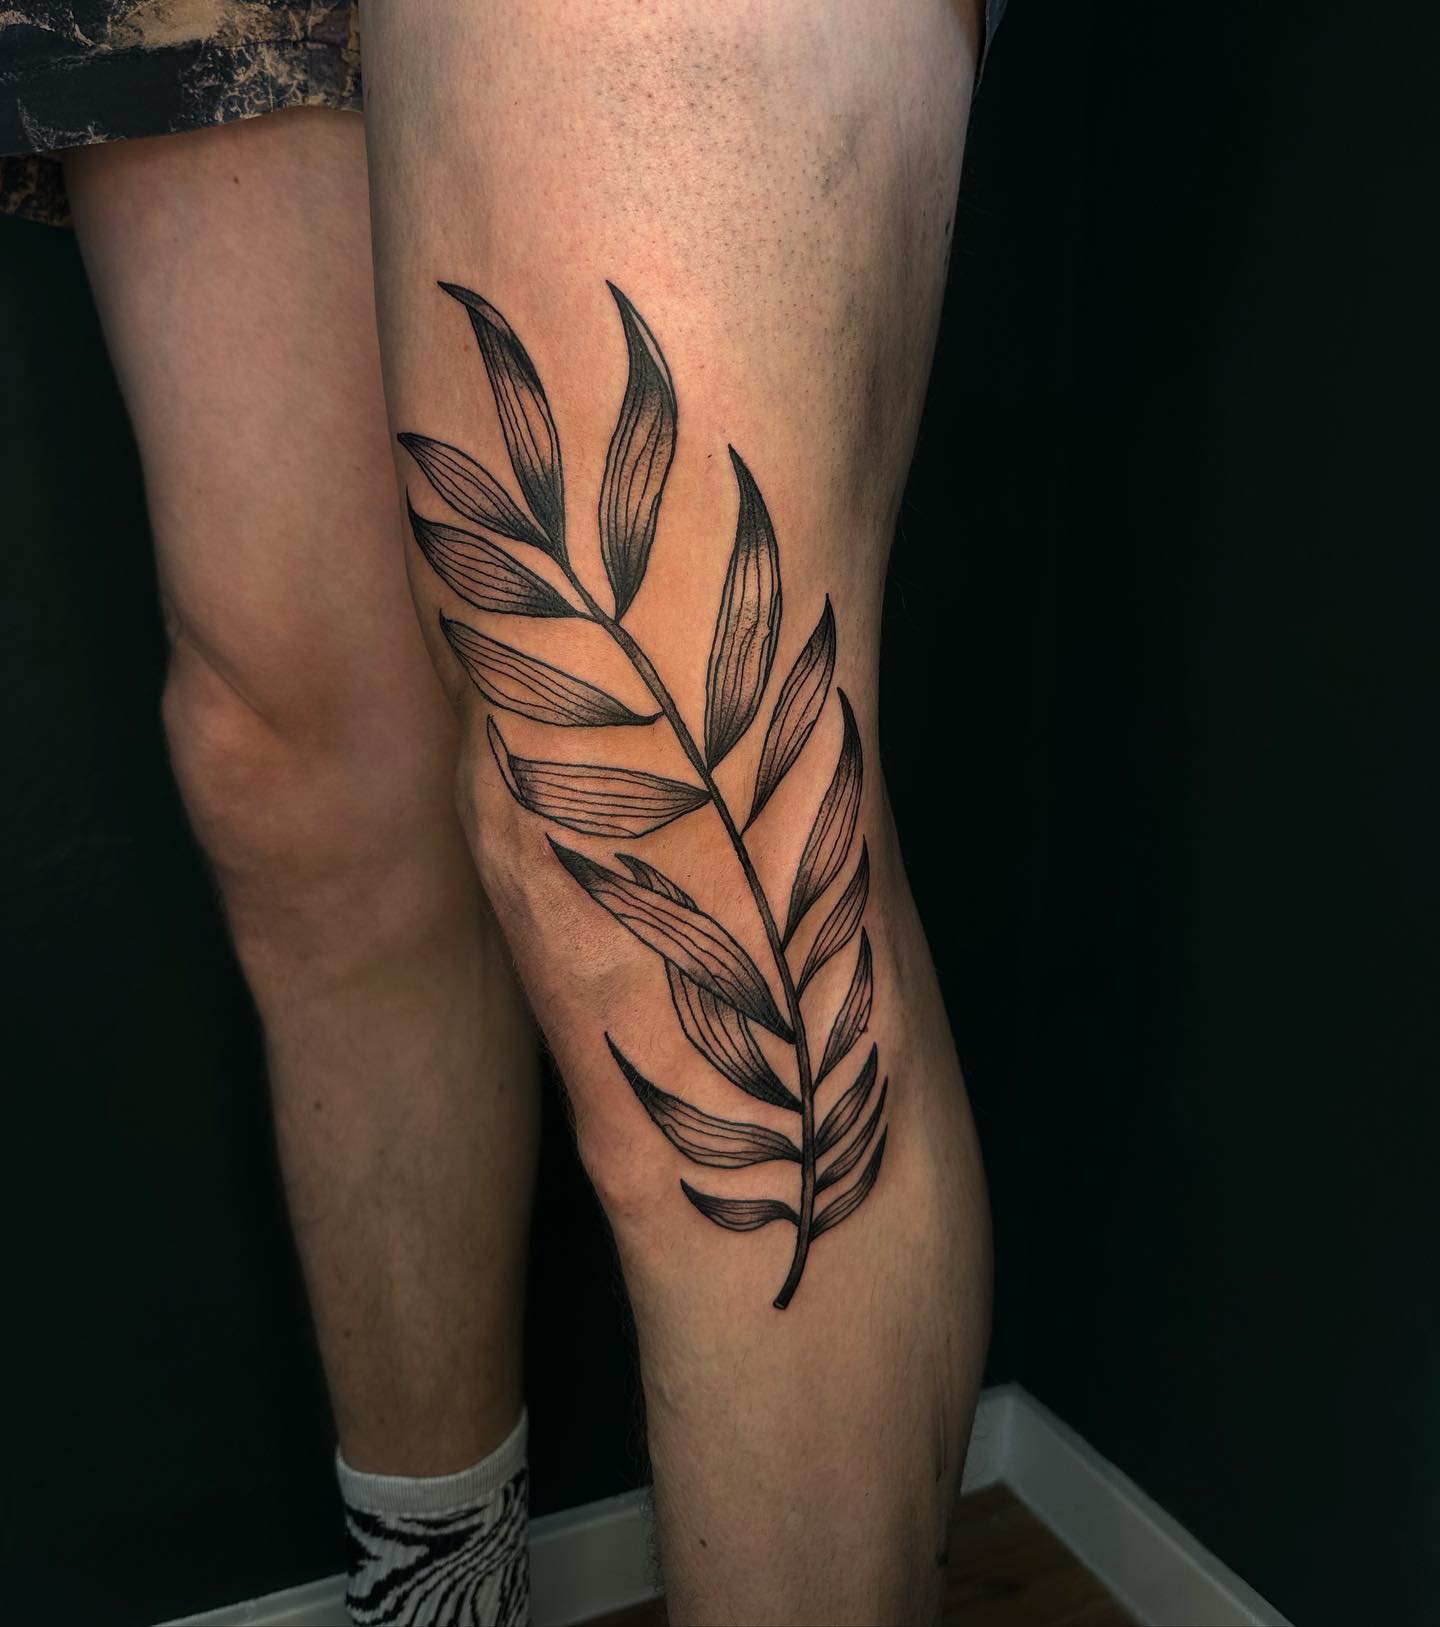 _bamboo leaf _ 
.
.
#tattoo #tattoos #black #blackworktattoo #illustration #leaf